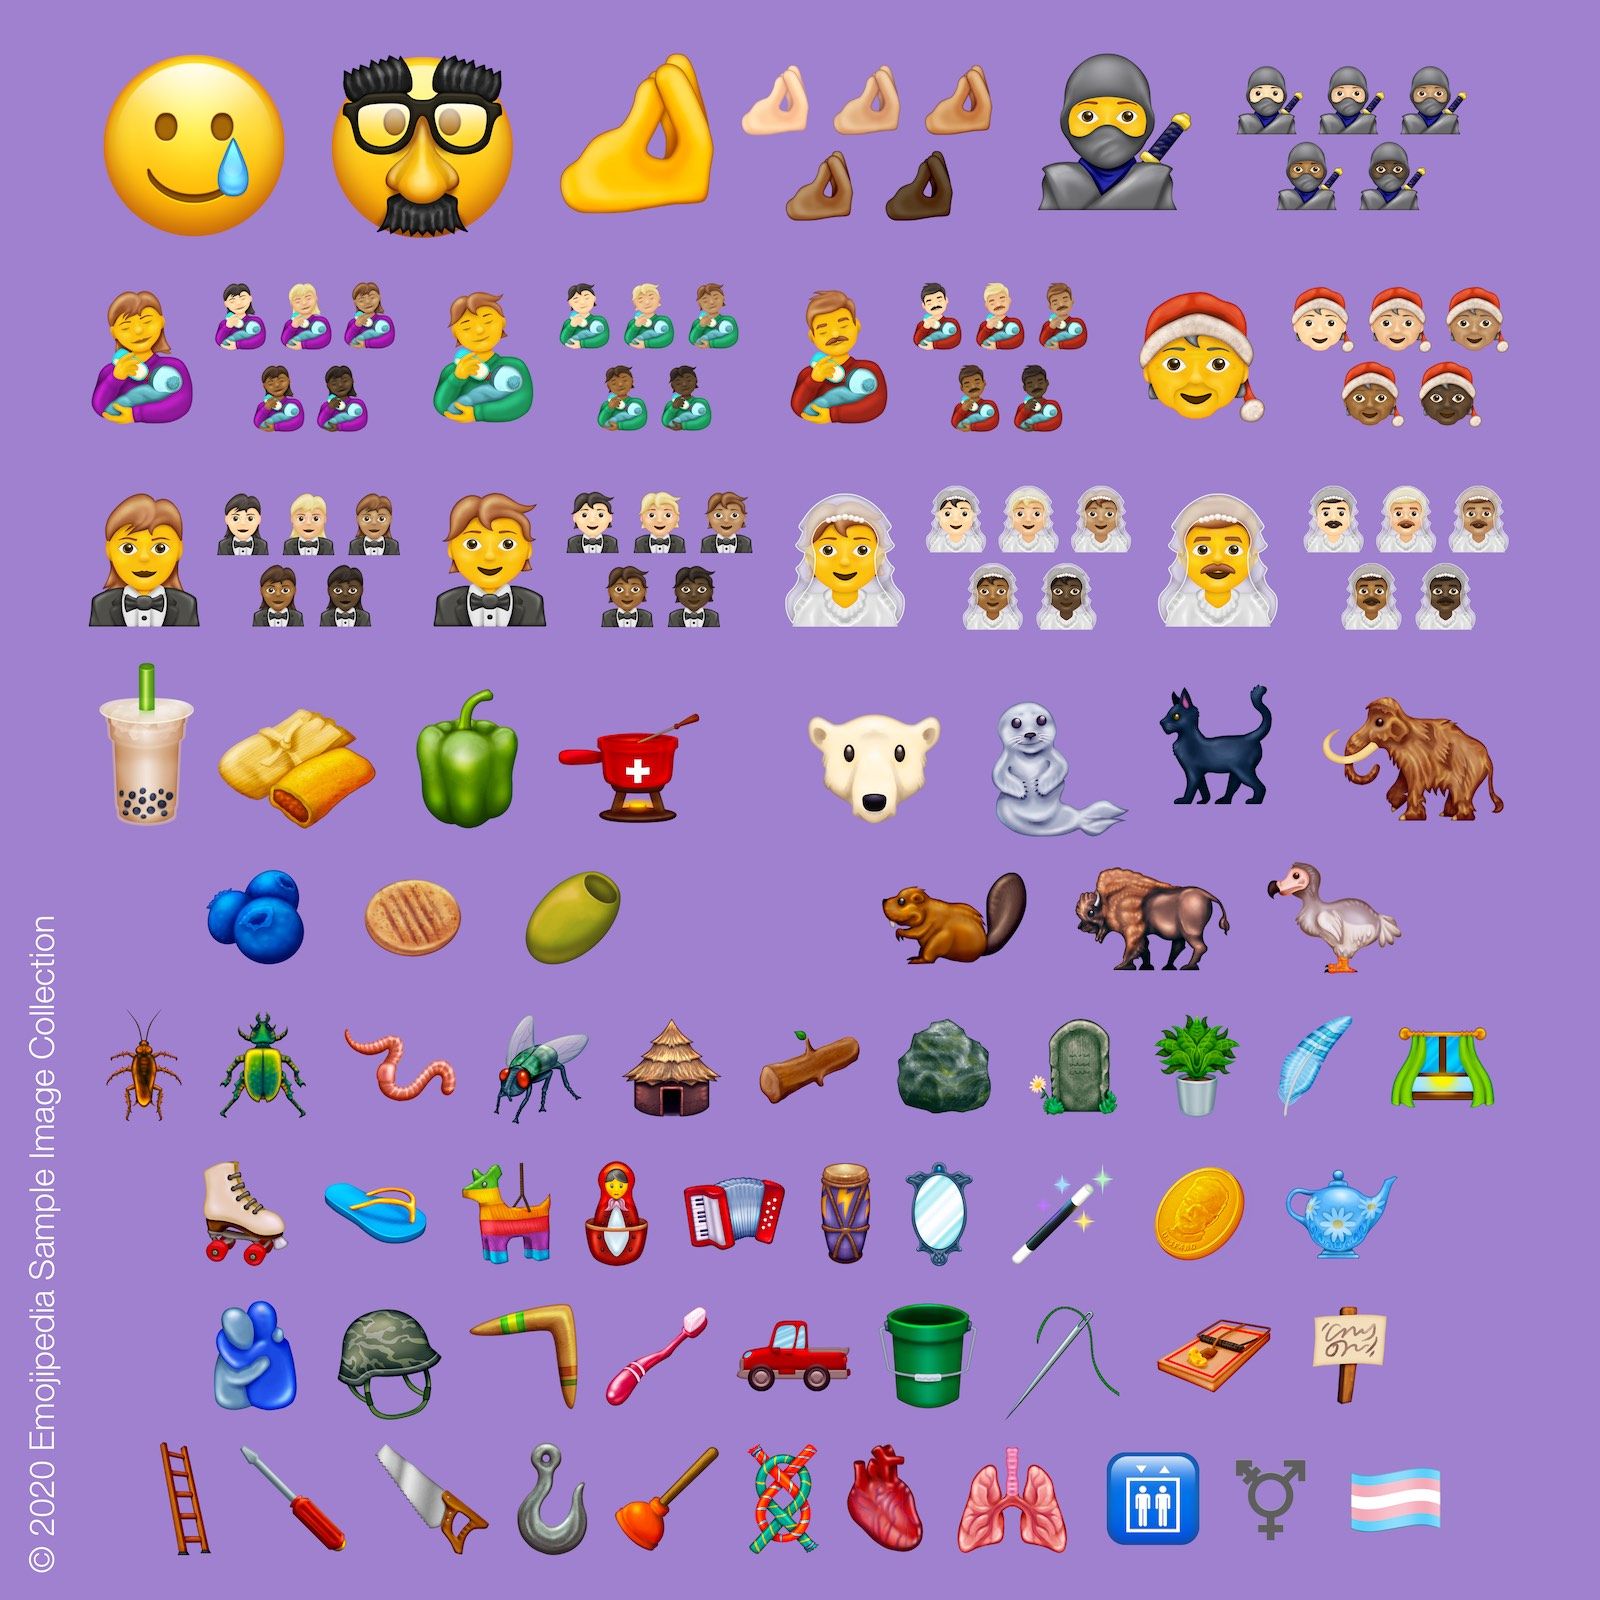 Emojipedia 2020 provbildsamling